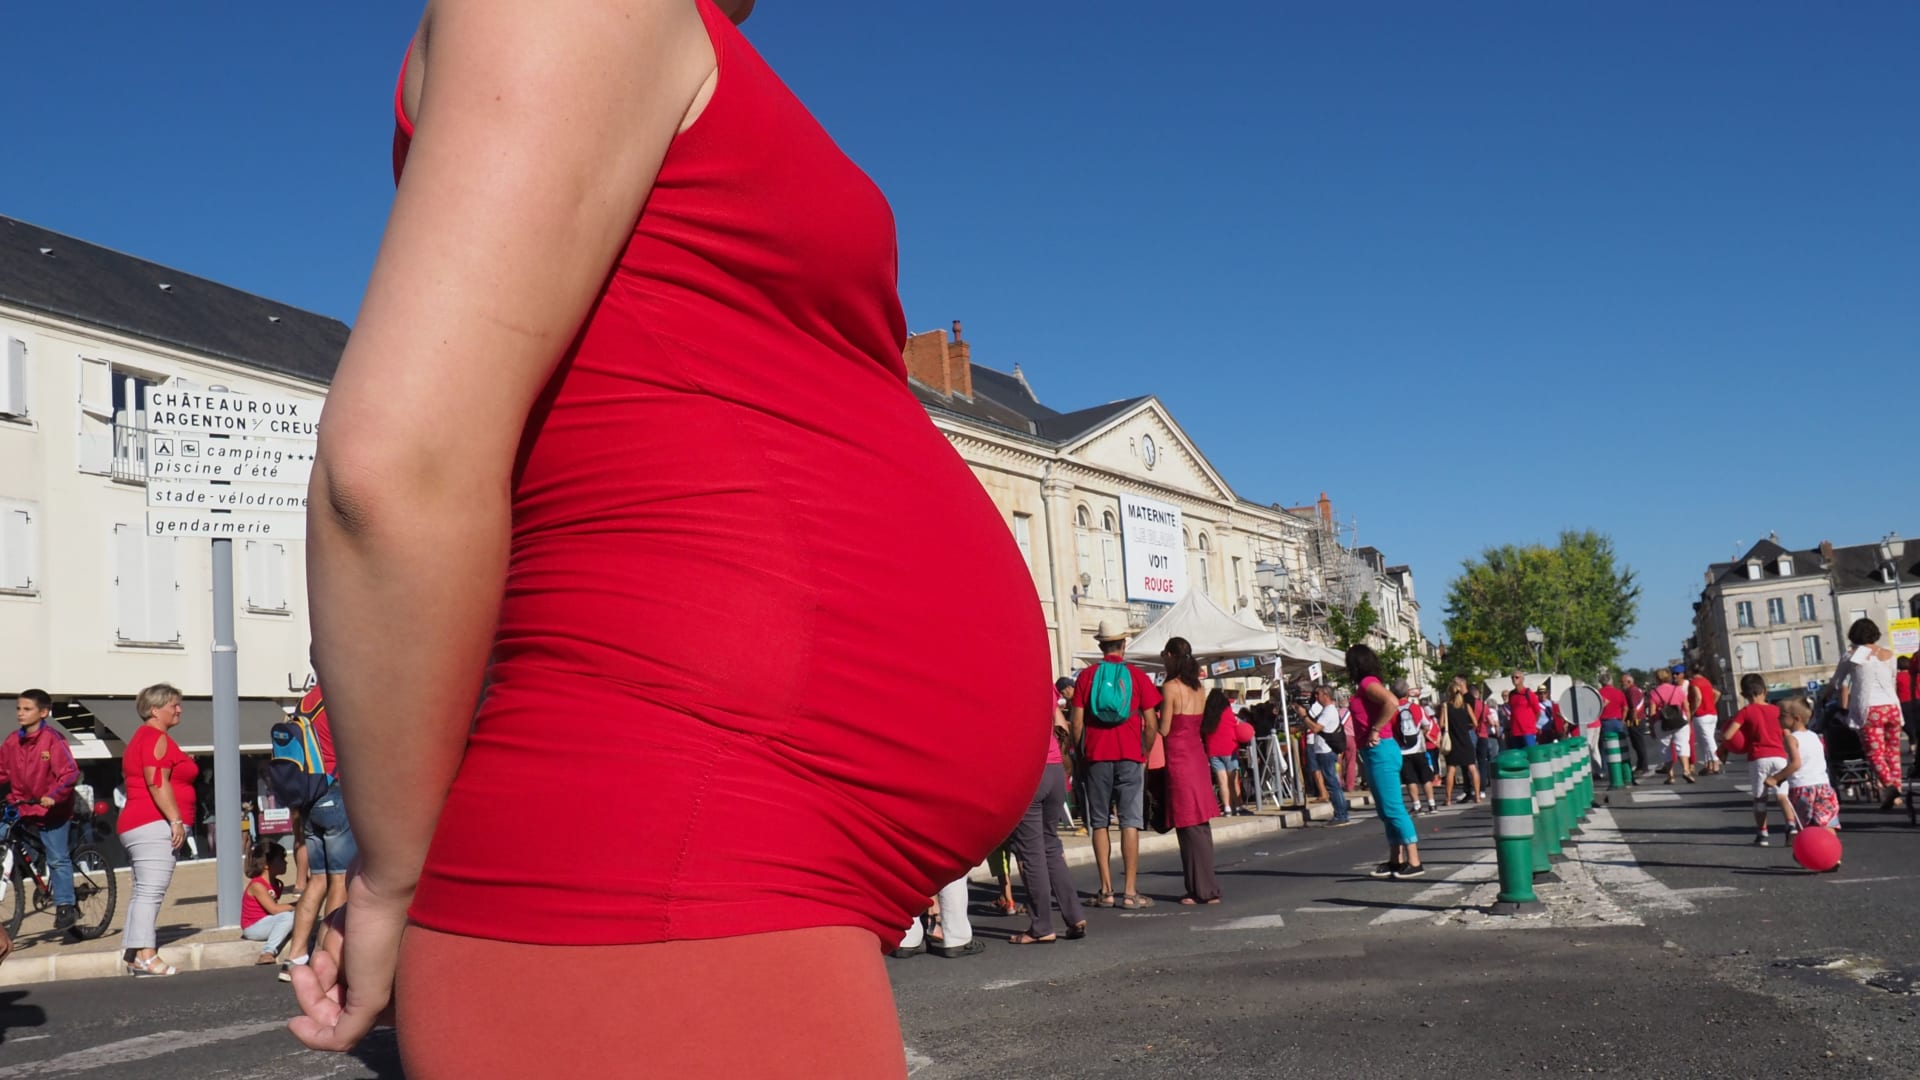 7 نصائح لتحسين الهضم أثناء الحمل